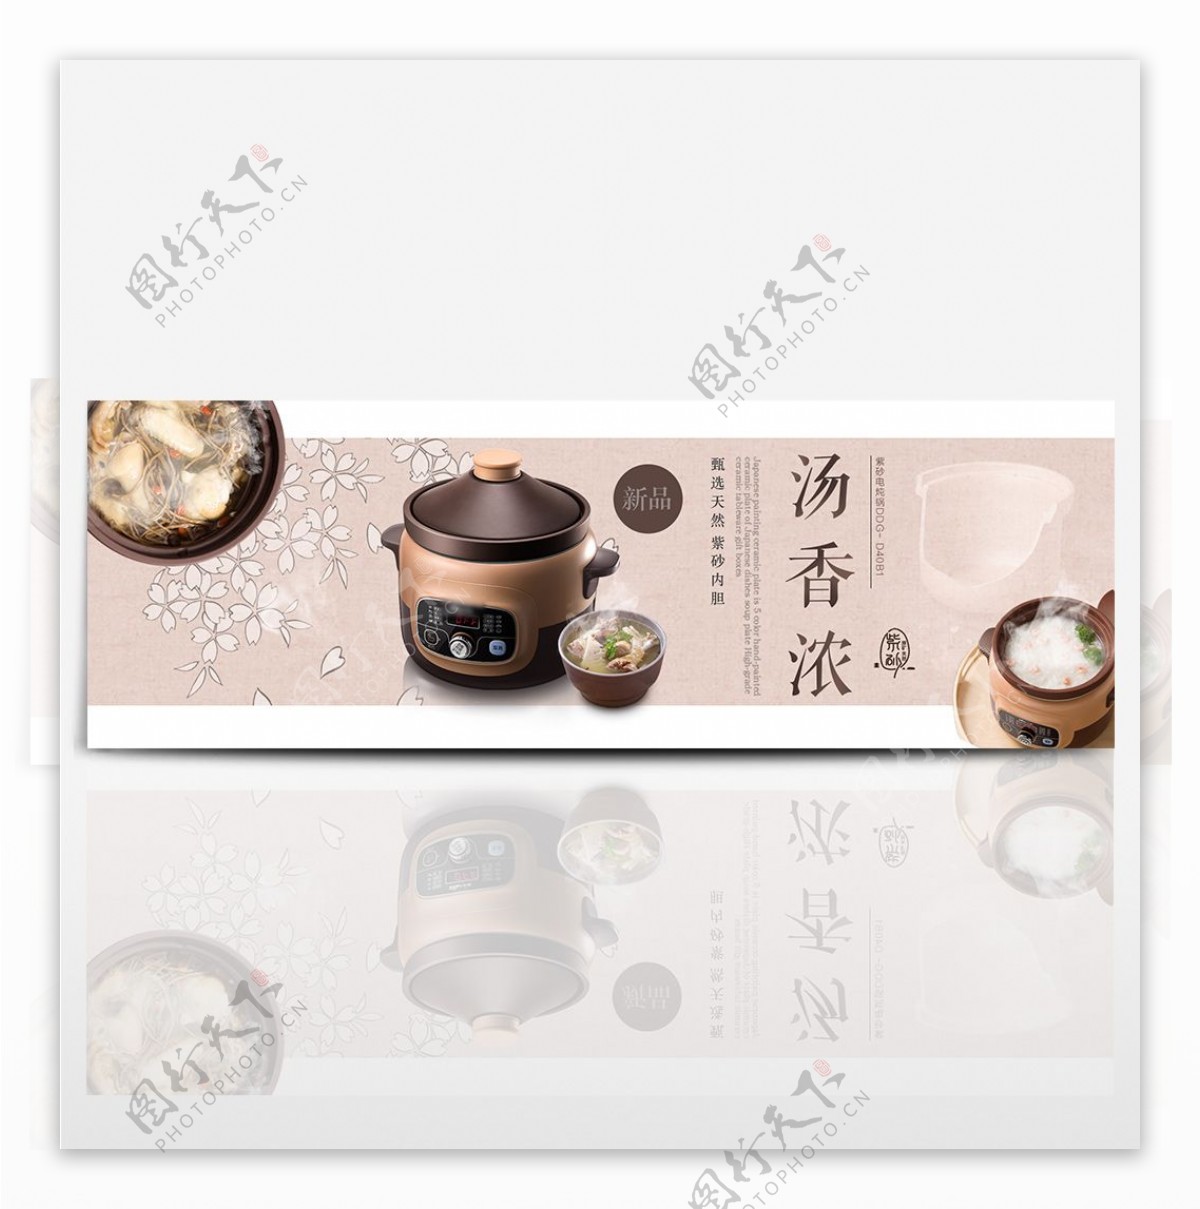 棕色中国风简洁文化感紫砂壶电炖盅厨房电器